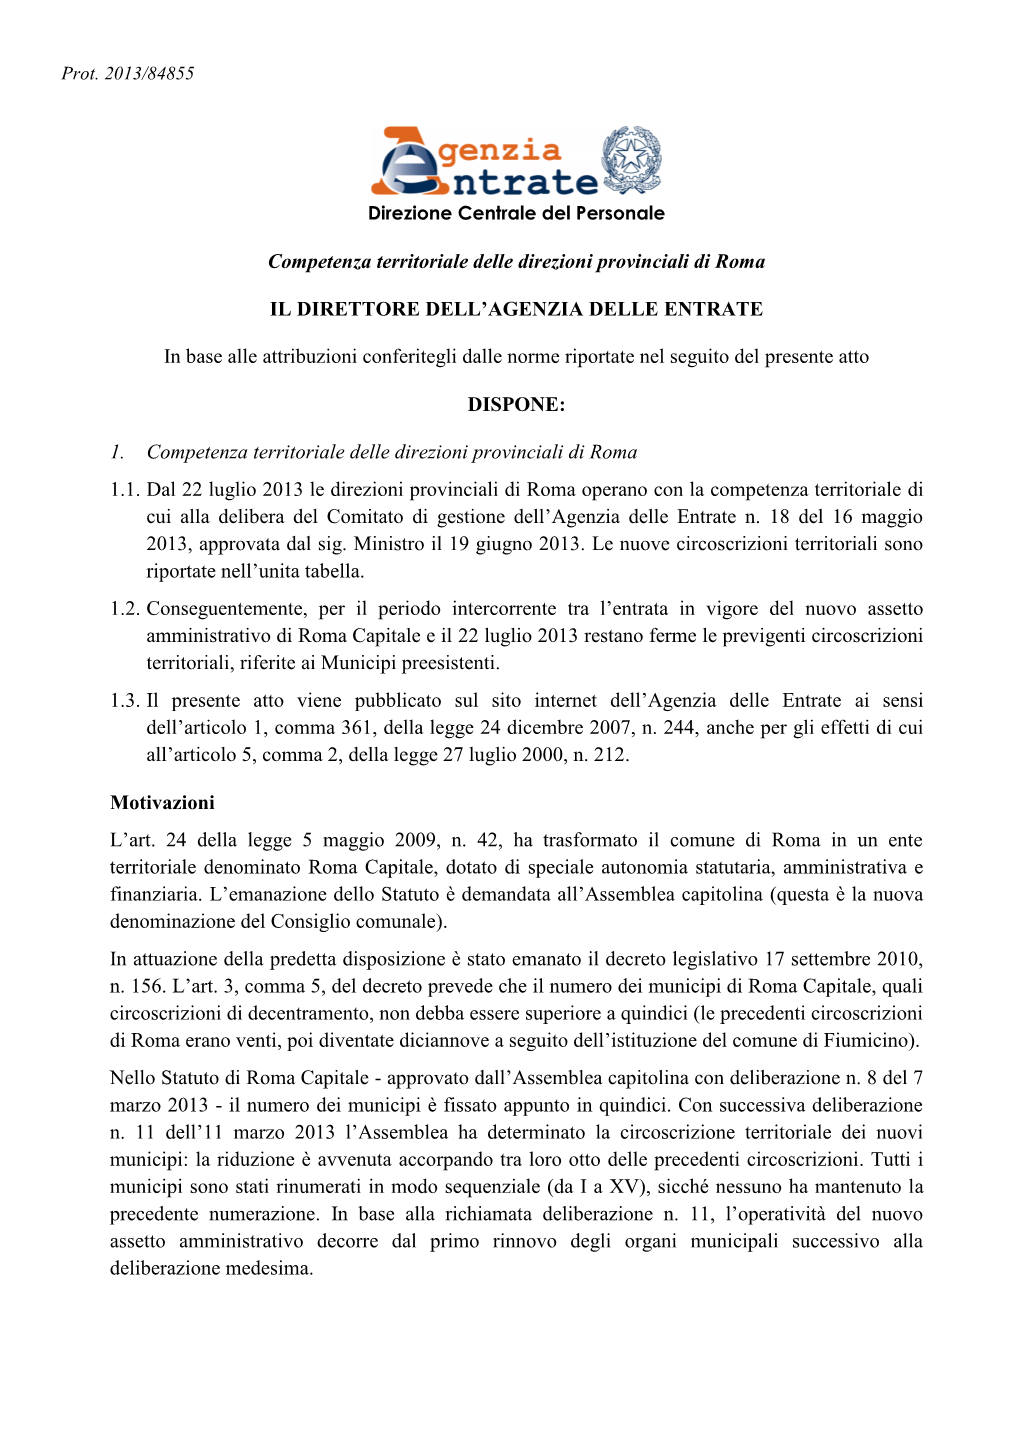 Competenza Territoriale Delle Direzioni Provinciali Di Roma